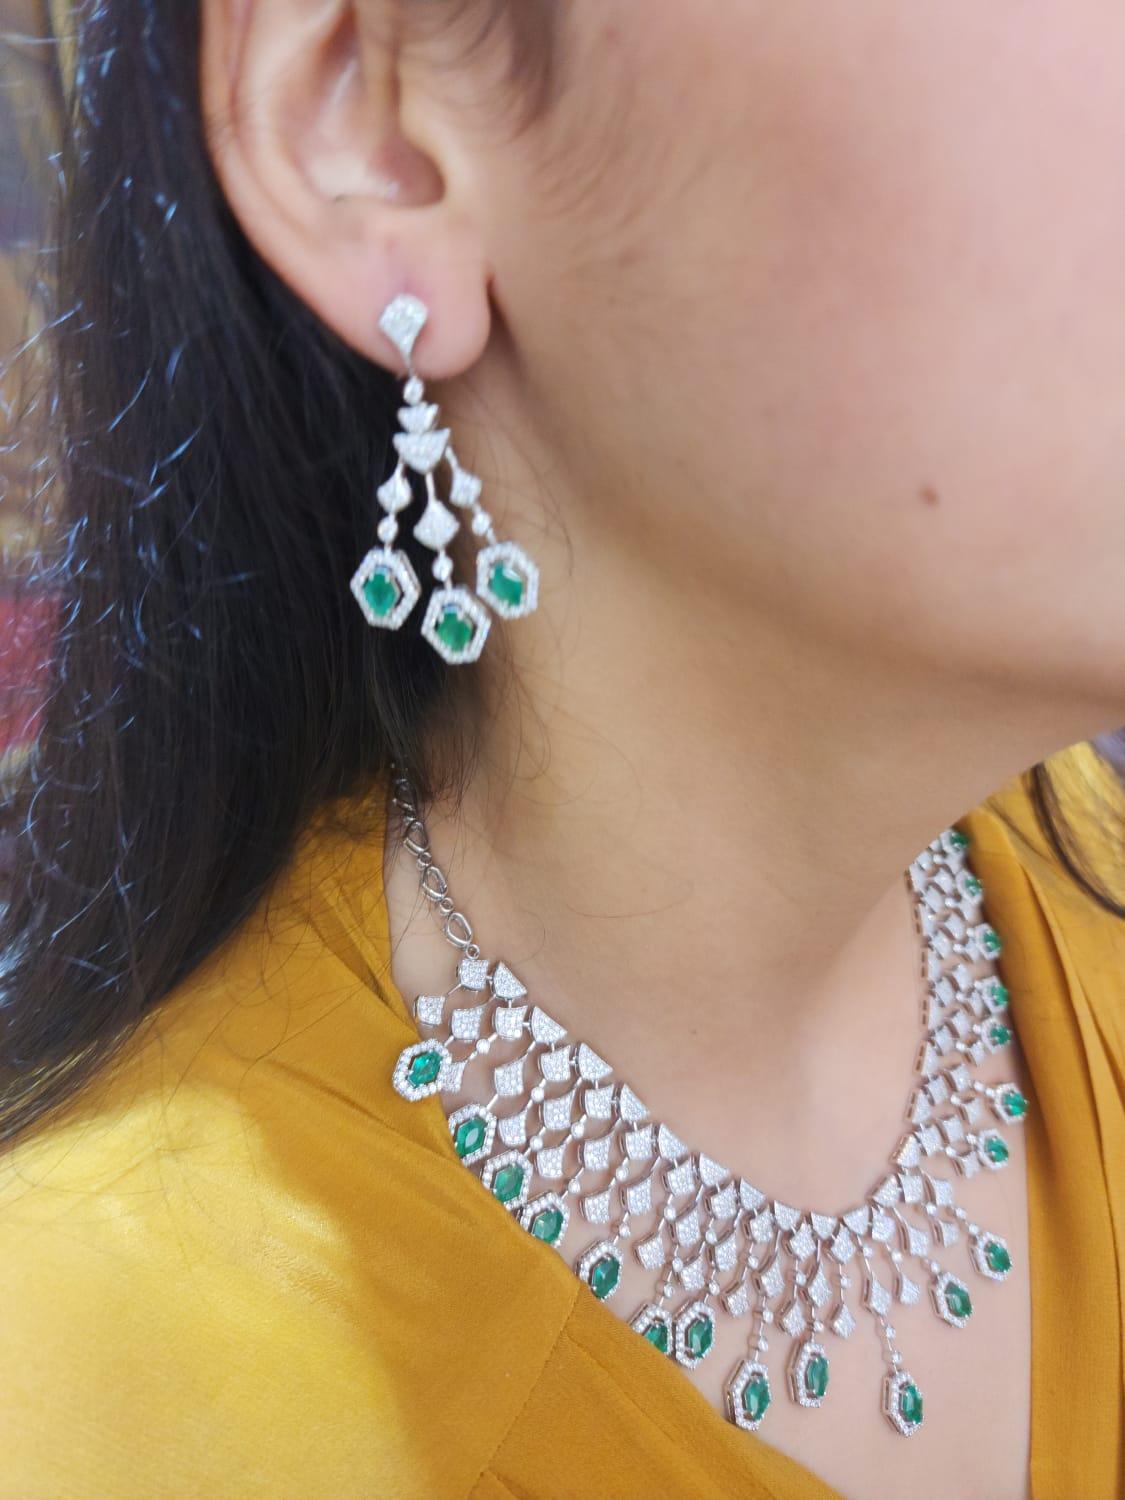 emerald diamond necklace set